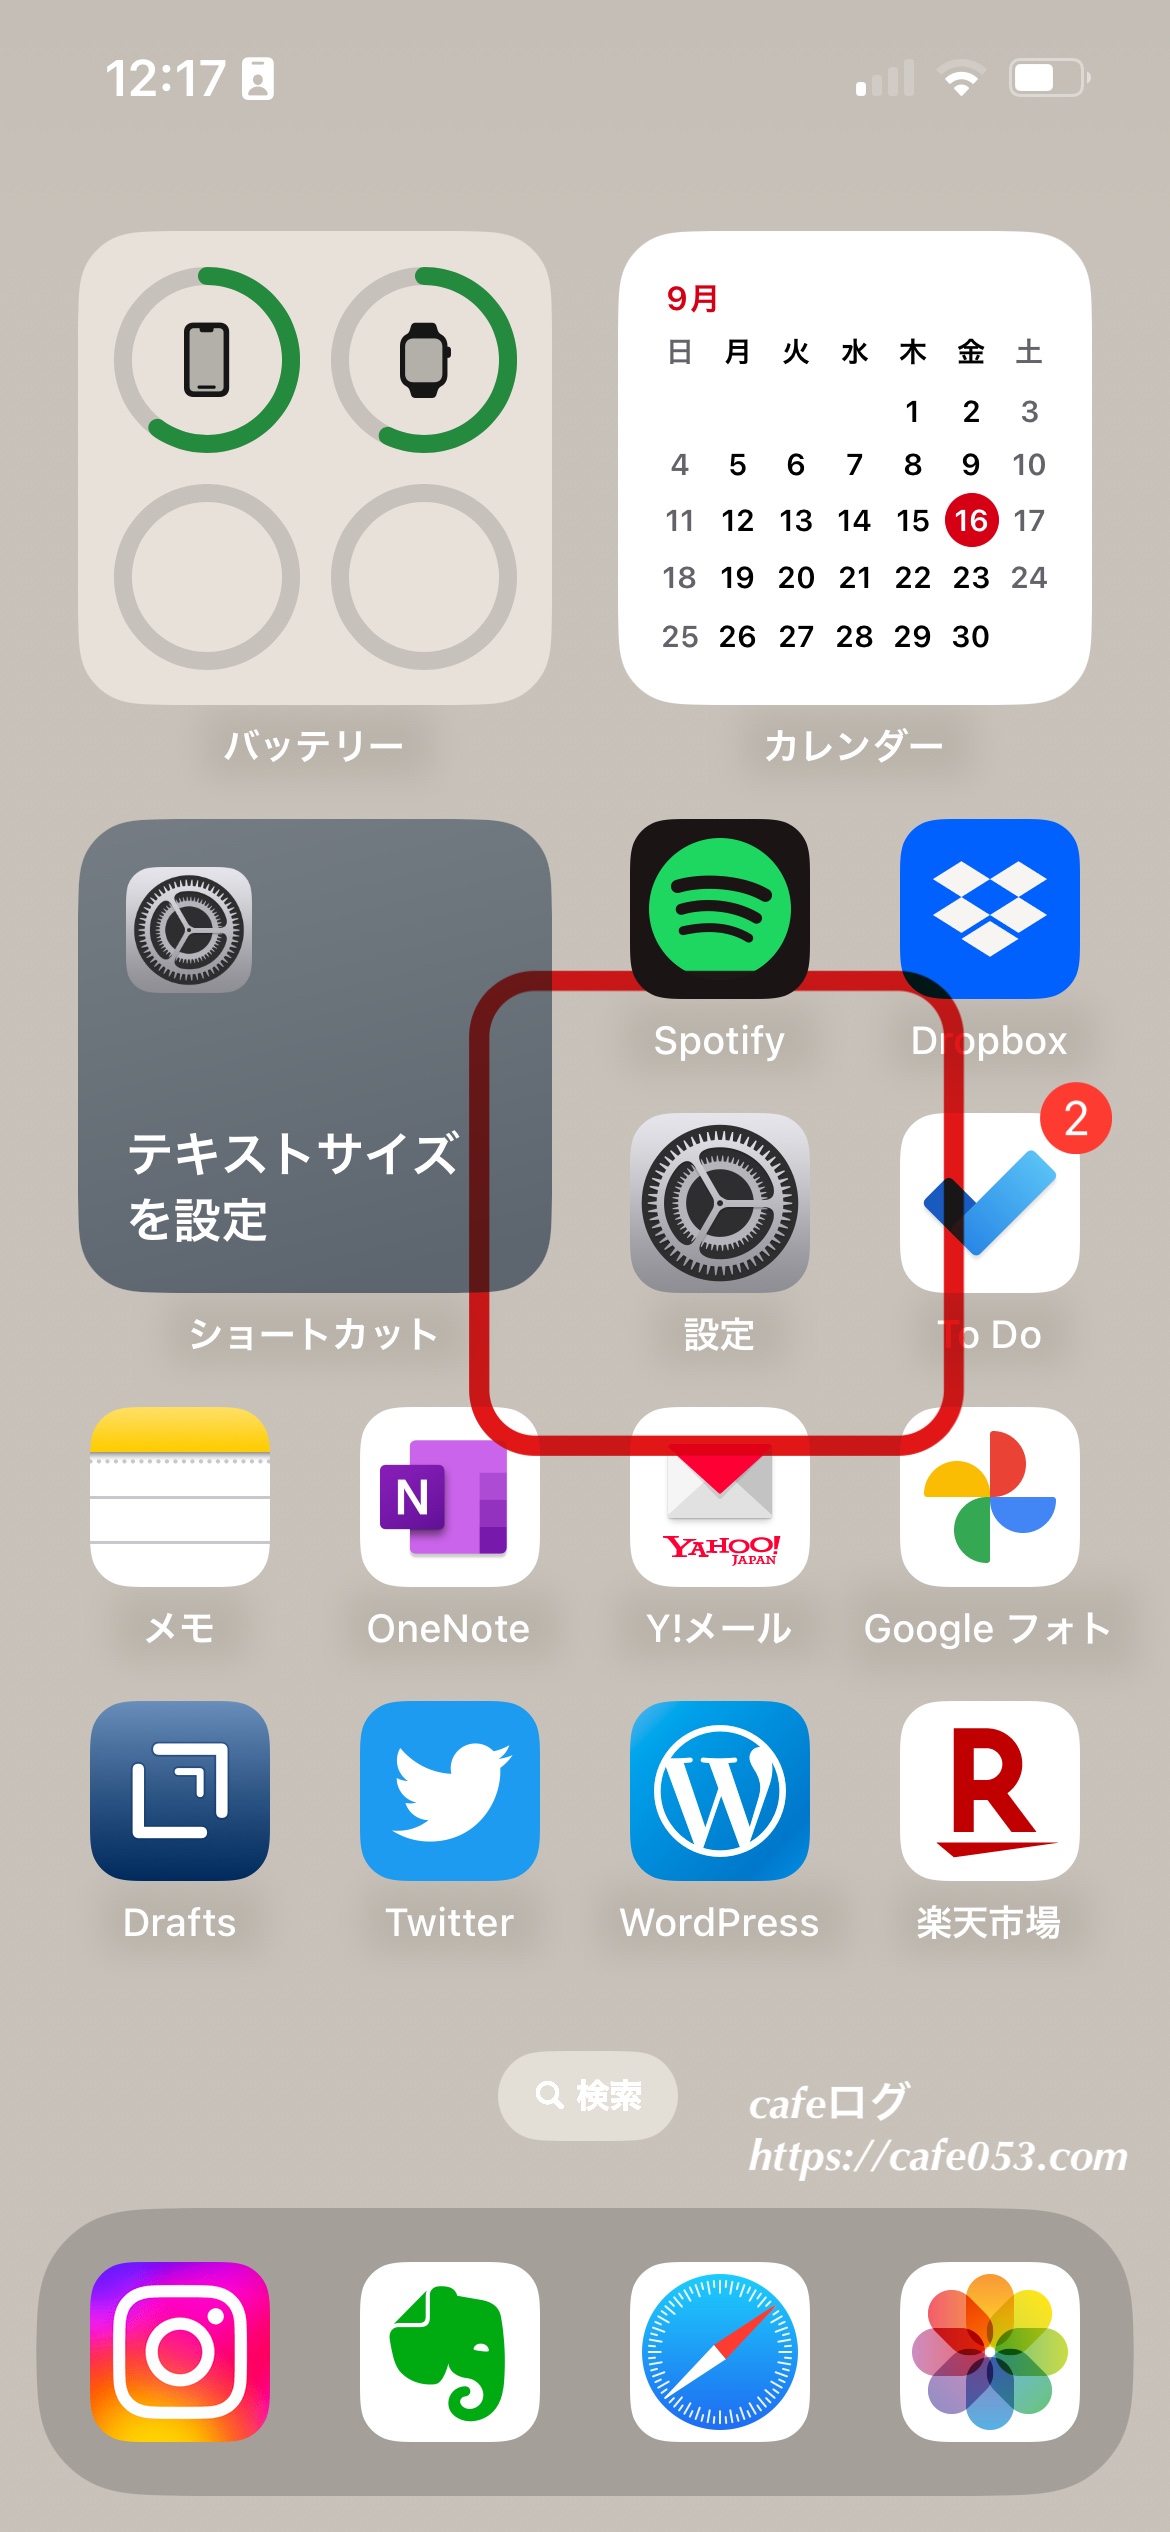 Apple iOS16